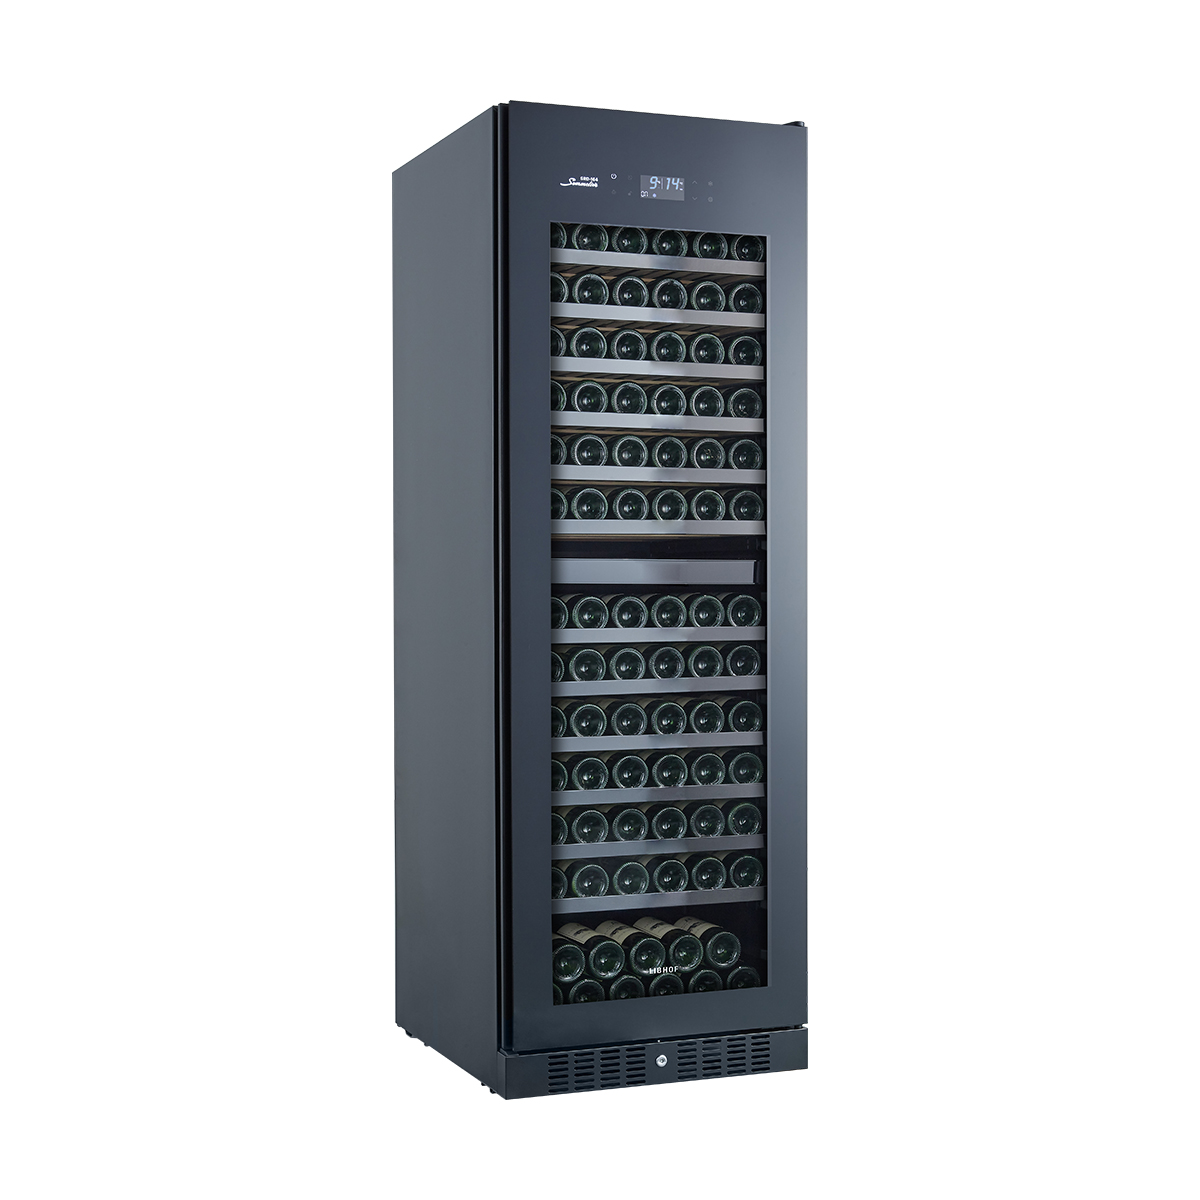 Винный шкаф двухзонный компрессорный Libhof Sommelier SRD-164 Black 595х680х1770мм на 164 бутылки черный встраиваемый/отдельностоящий